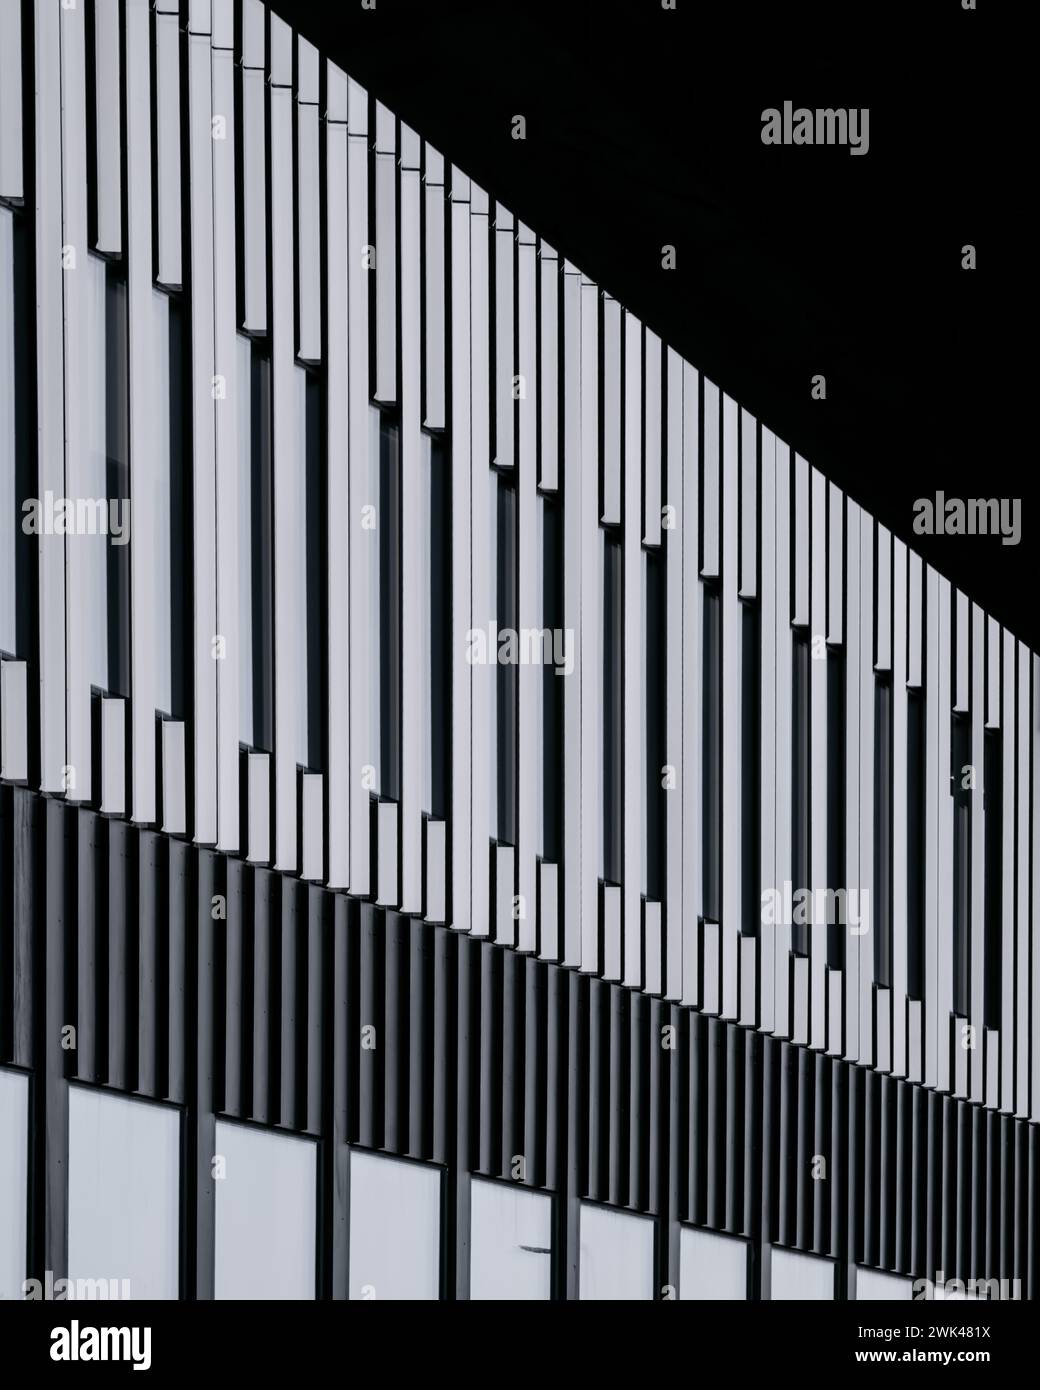 Cette image montre une vue rapprochée d'une façade de bâtiments contemporains, avec un motif saisissant d'ailerons verticaux sur un dos sombre contrasté Banque D'Images